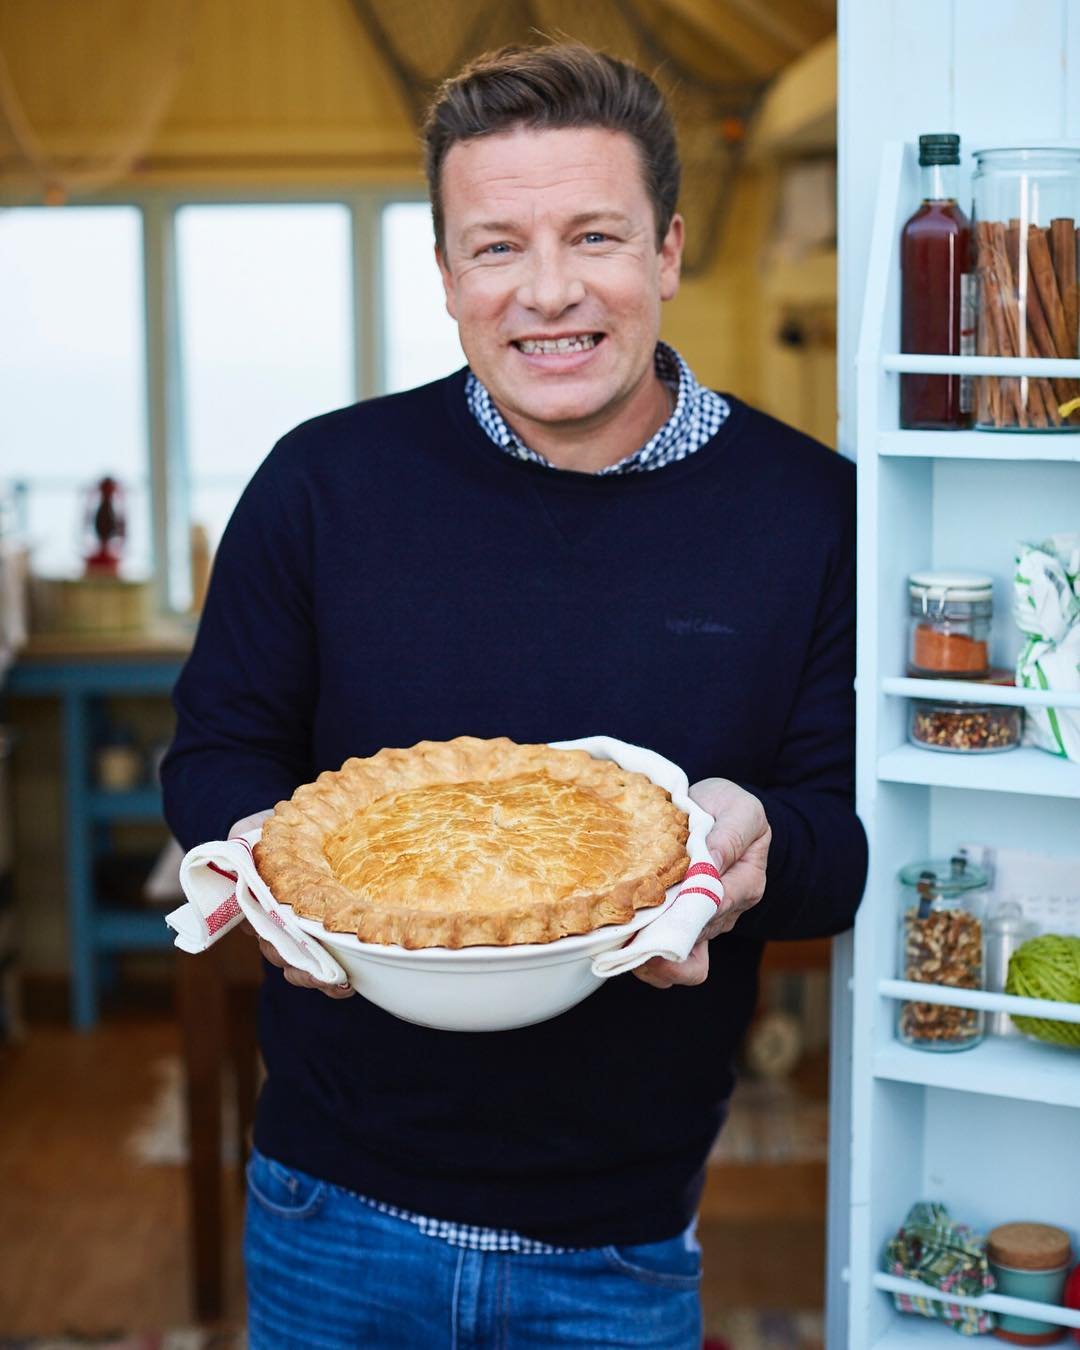 Jamie Oliver: ”Mesterszakácsnak lenni, nem mindig egyenlő a felhőtlen boldogsággal!”